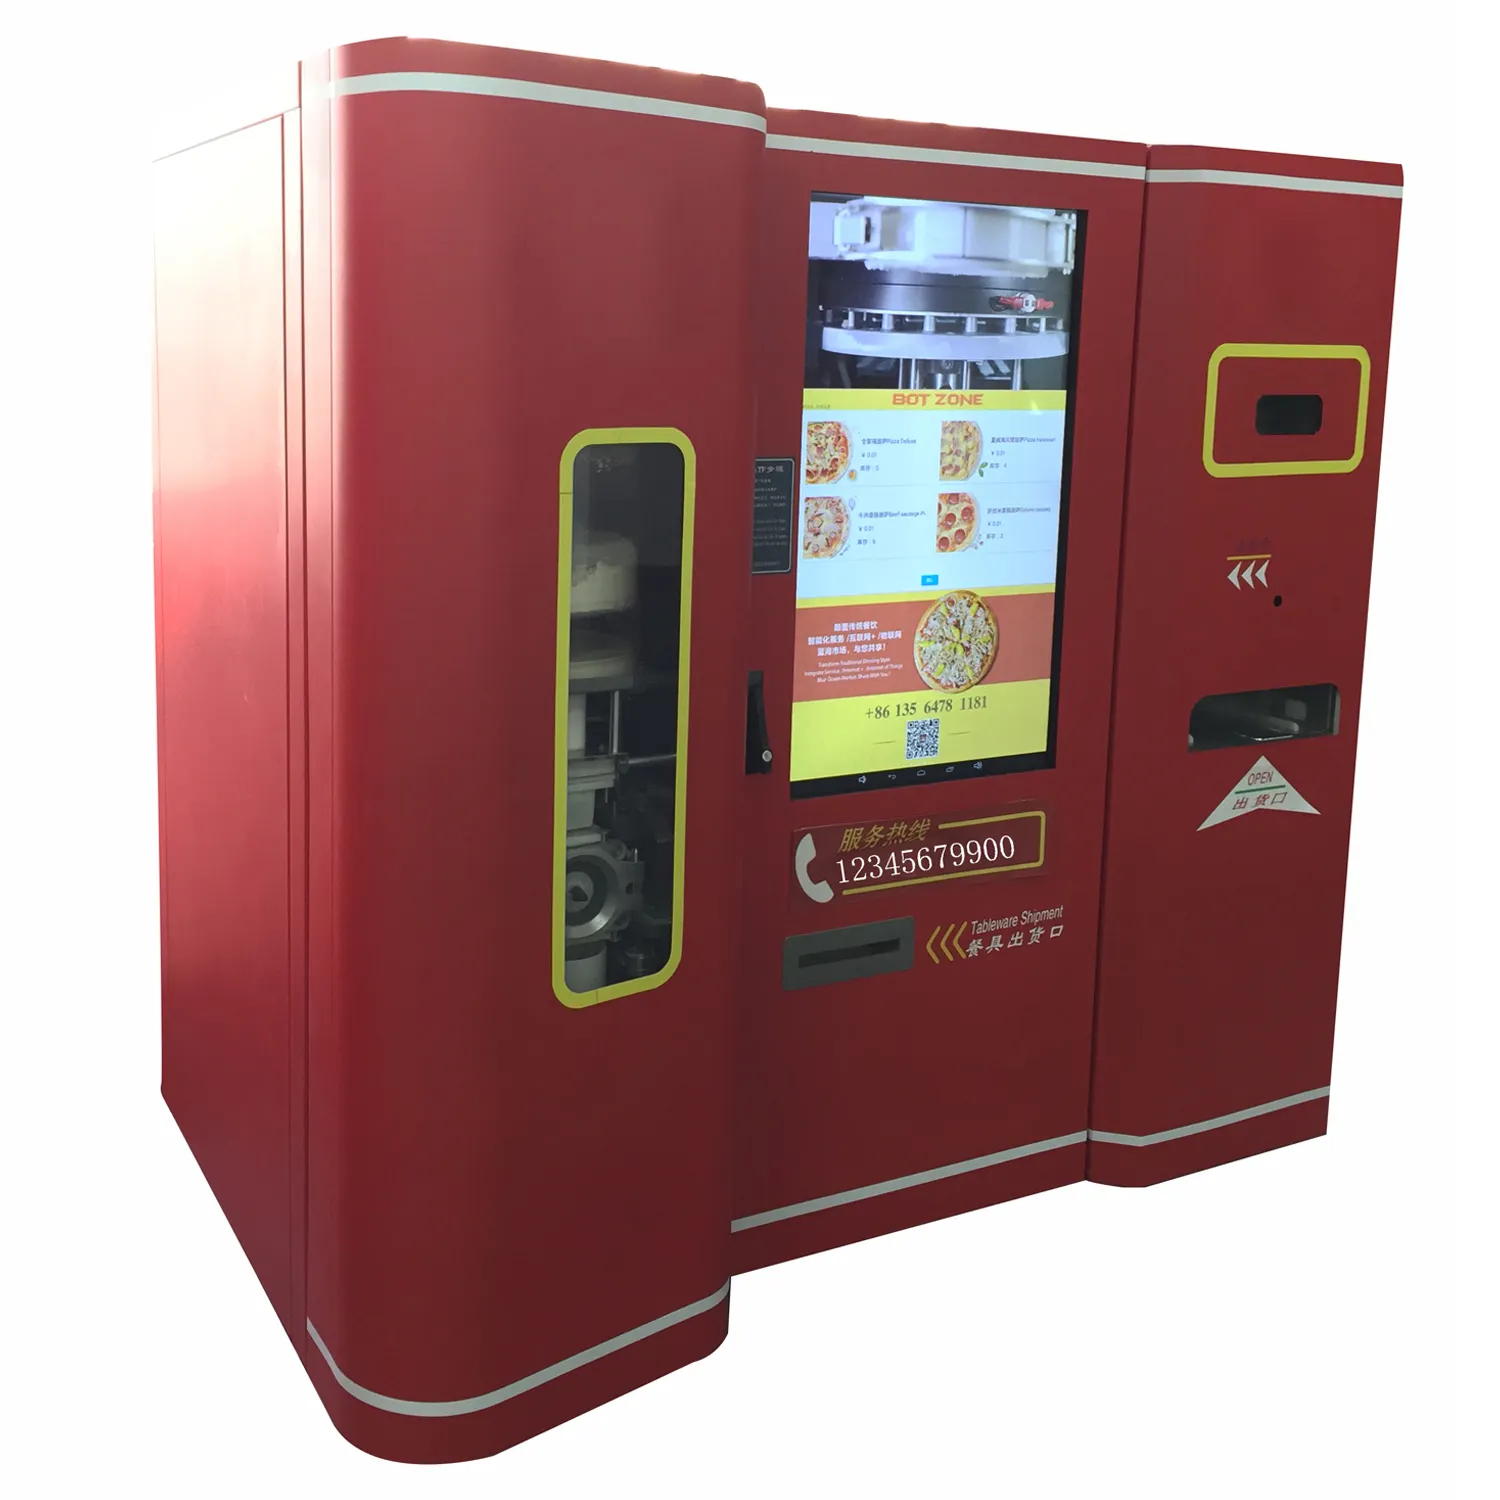 Distributore automatico di cibo per panini per Pizza con touch screen da 47 pollici che vende pizza in loco